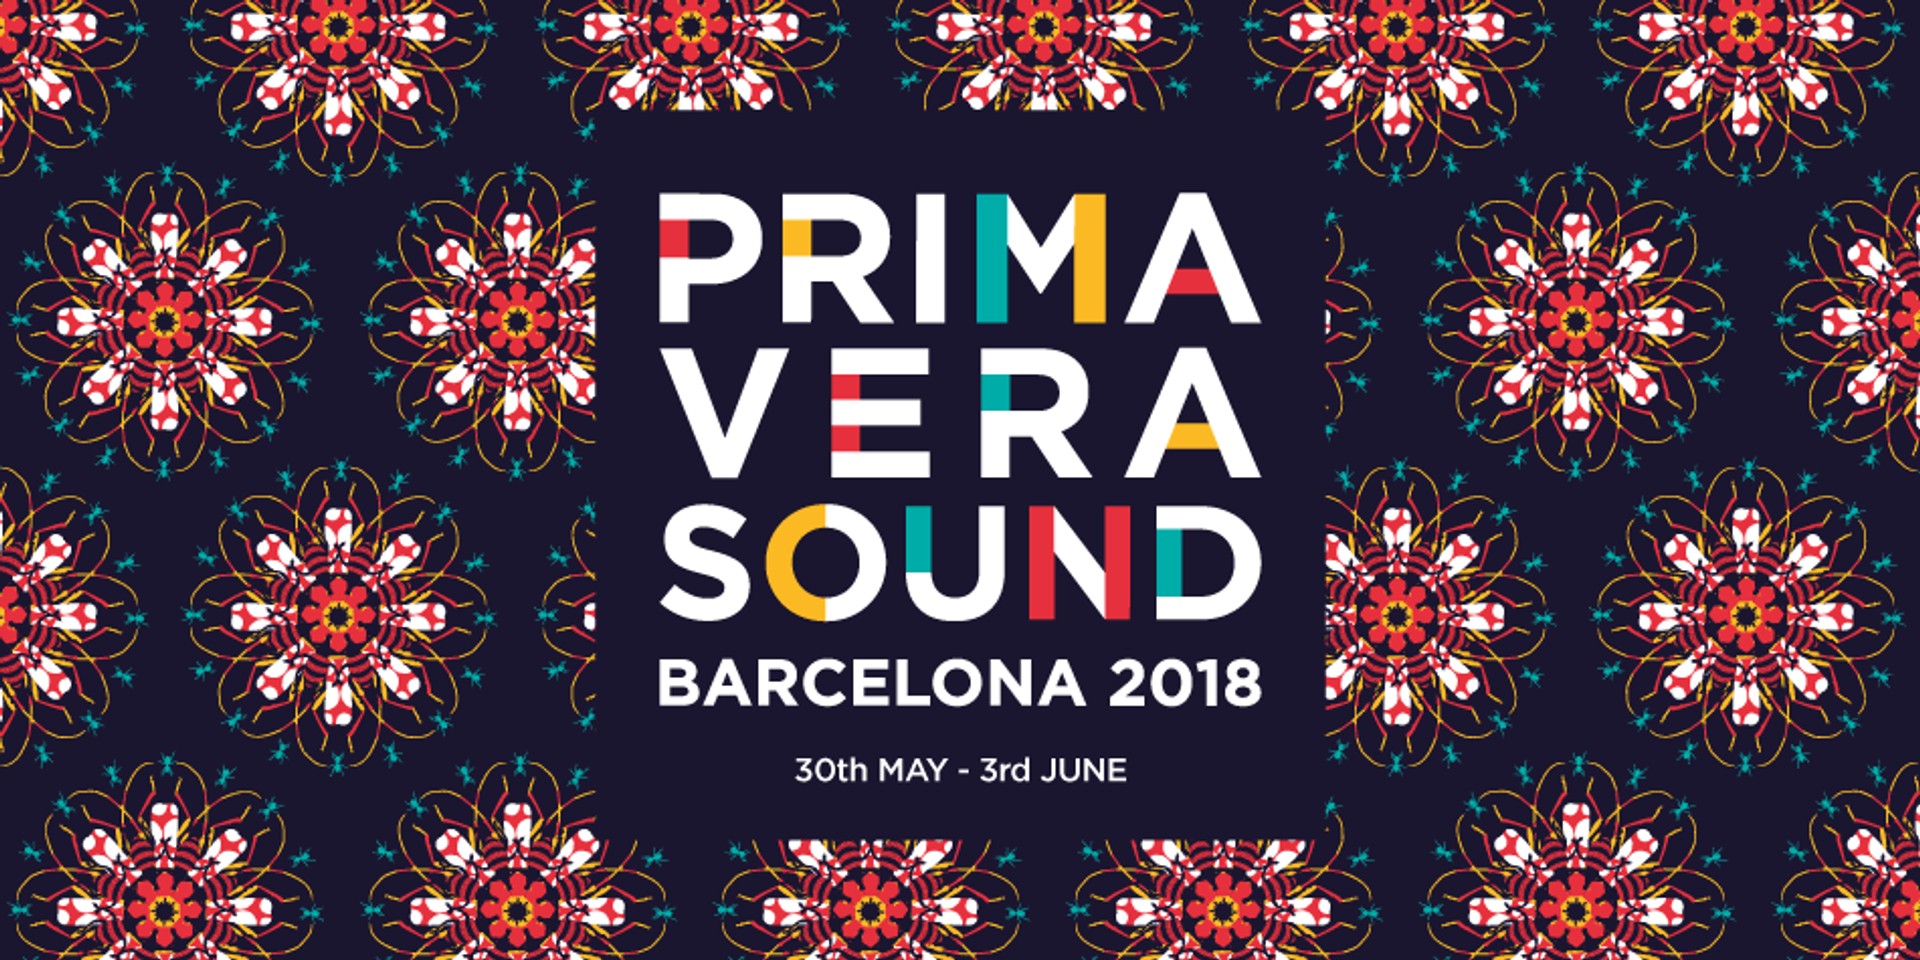 Primavera Sound reveals massive multi-genre lineup for 2018